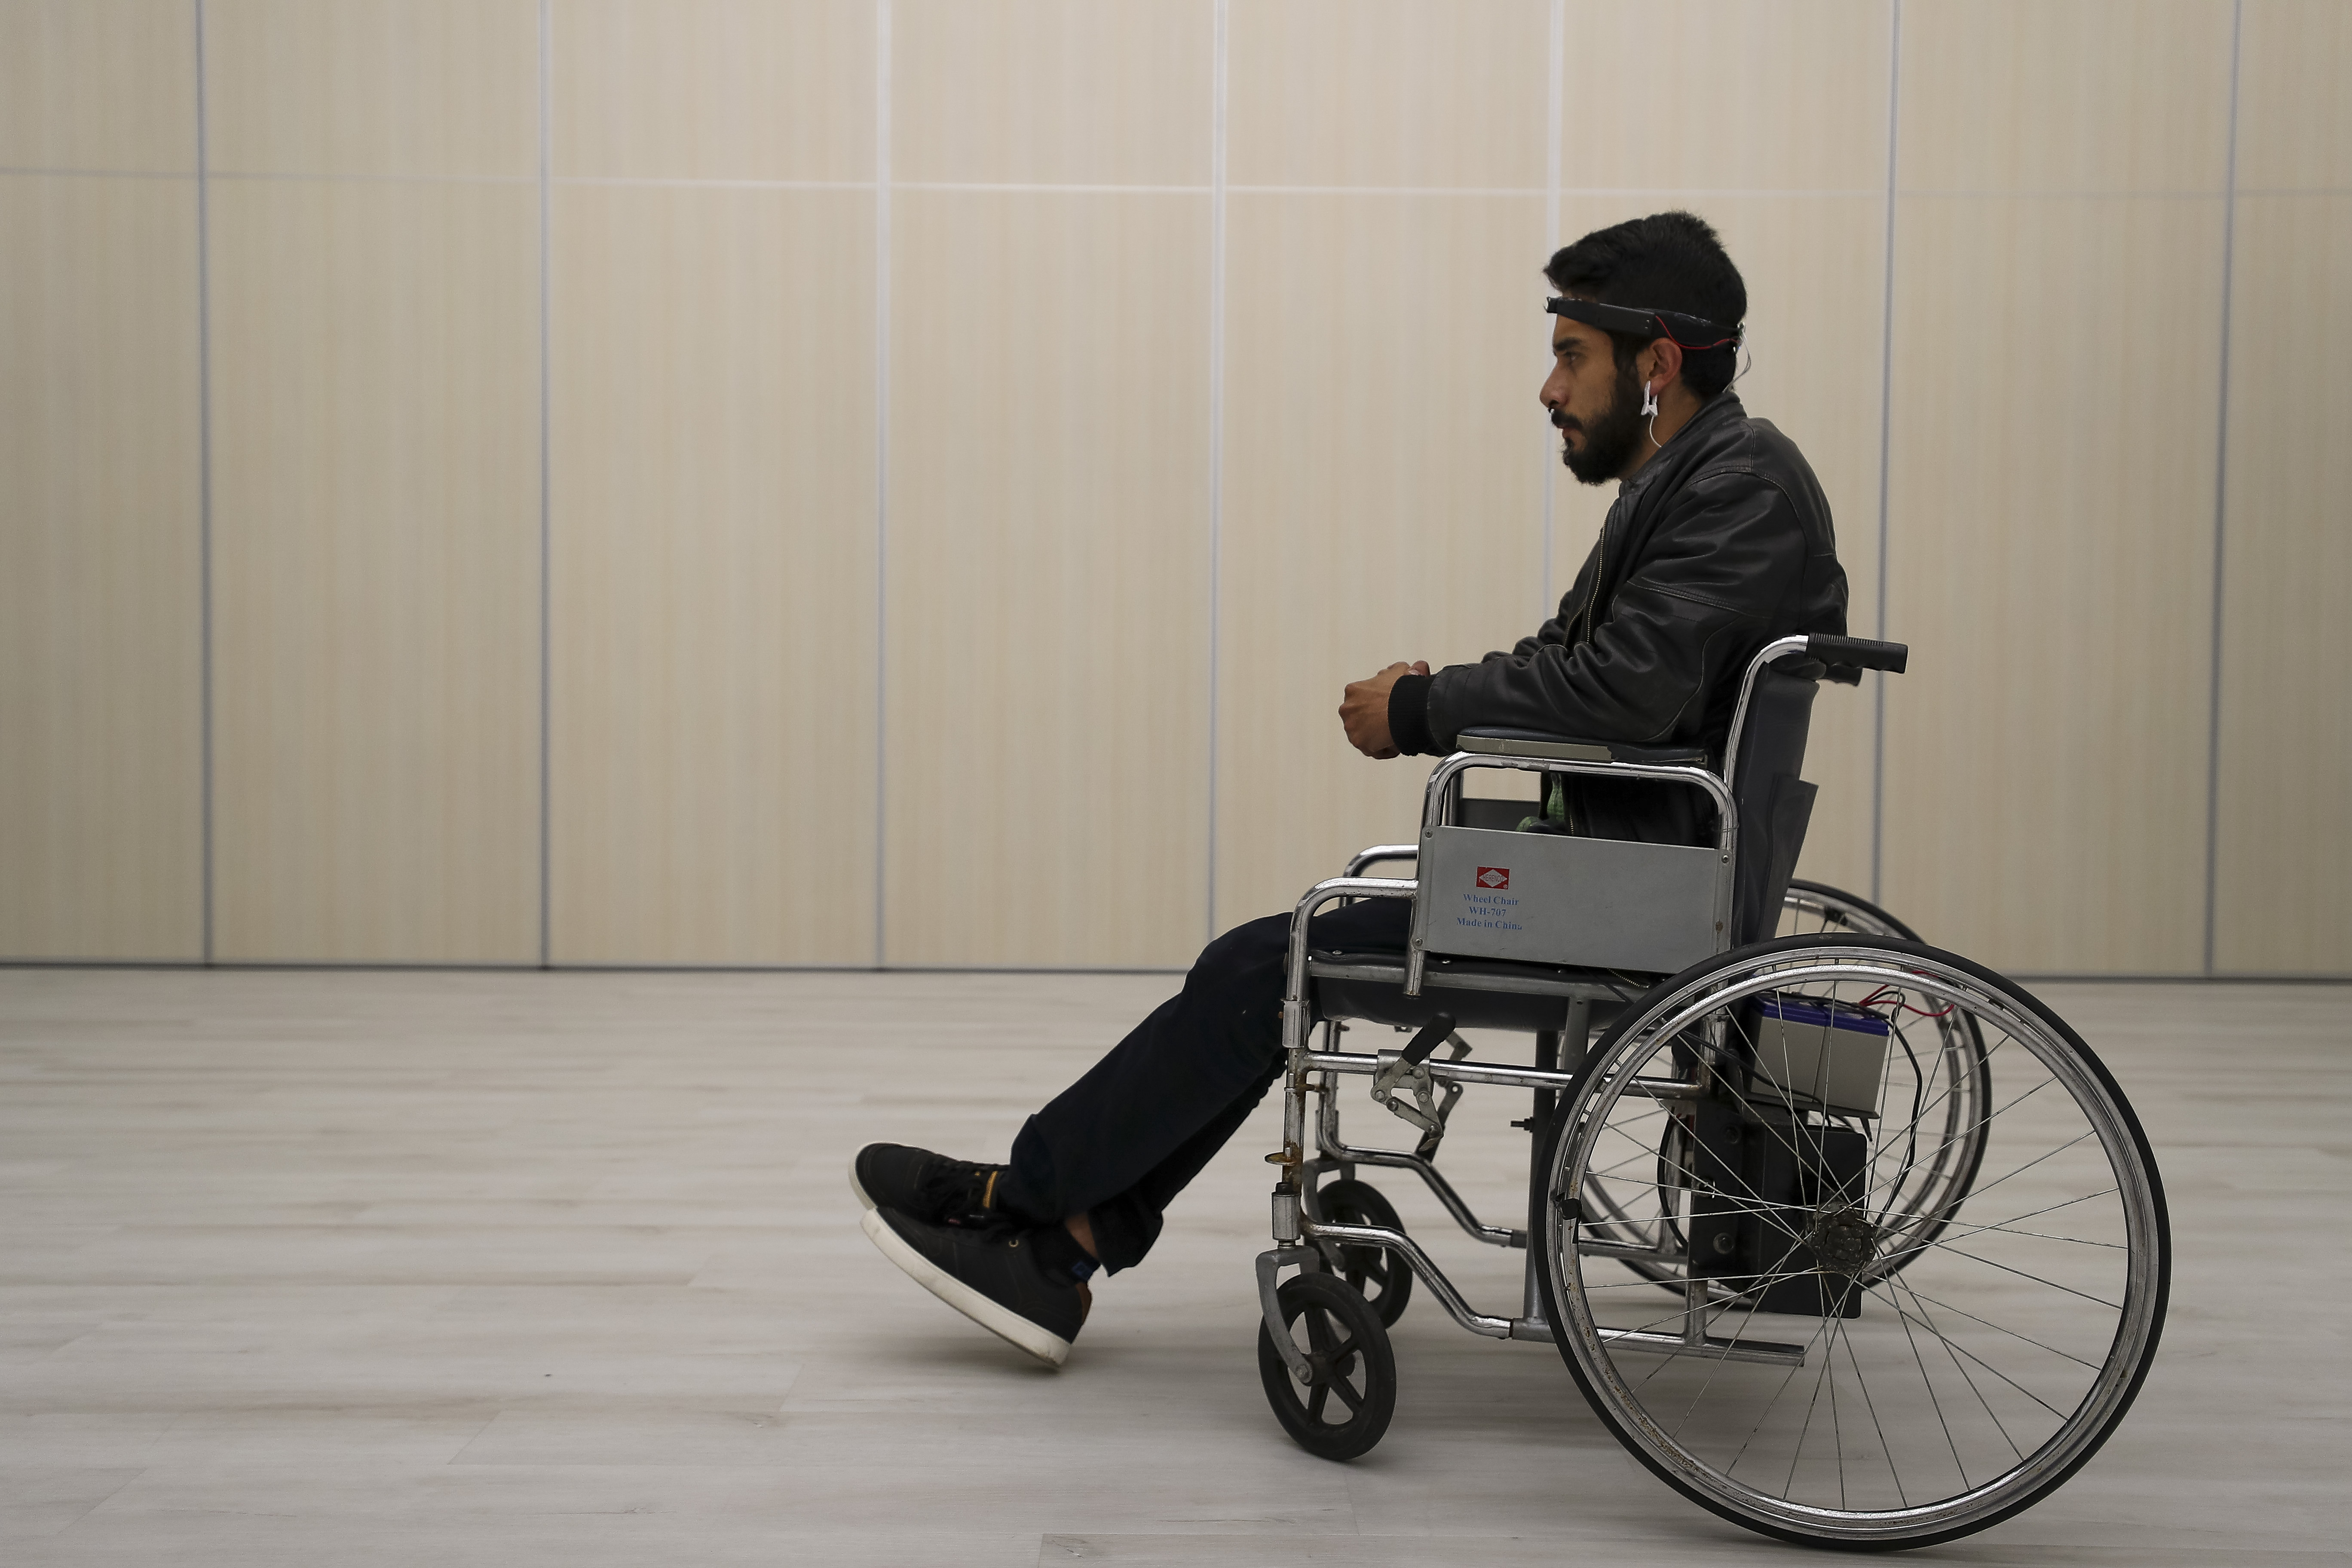 La silla de ruedas movida con la mente que perfeccionan jóvenes en Ecuador